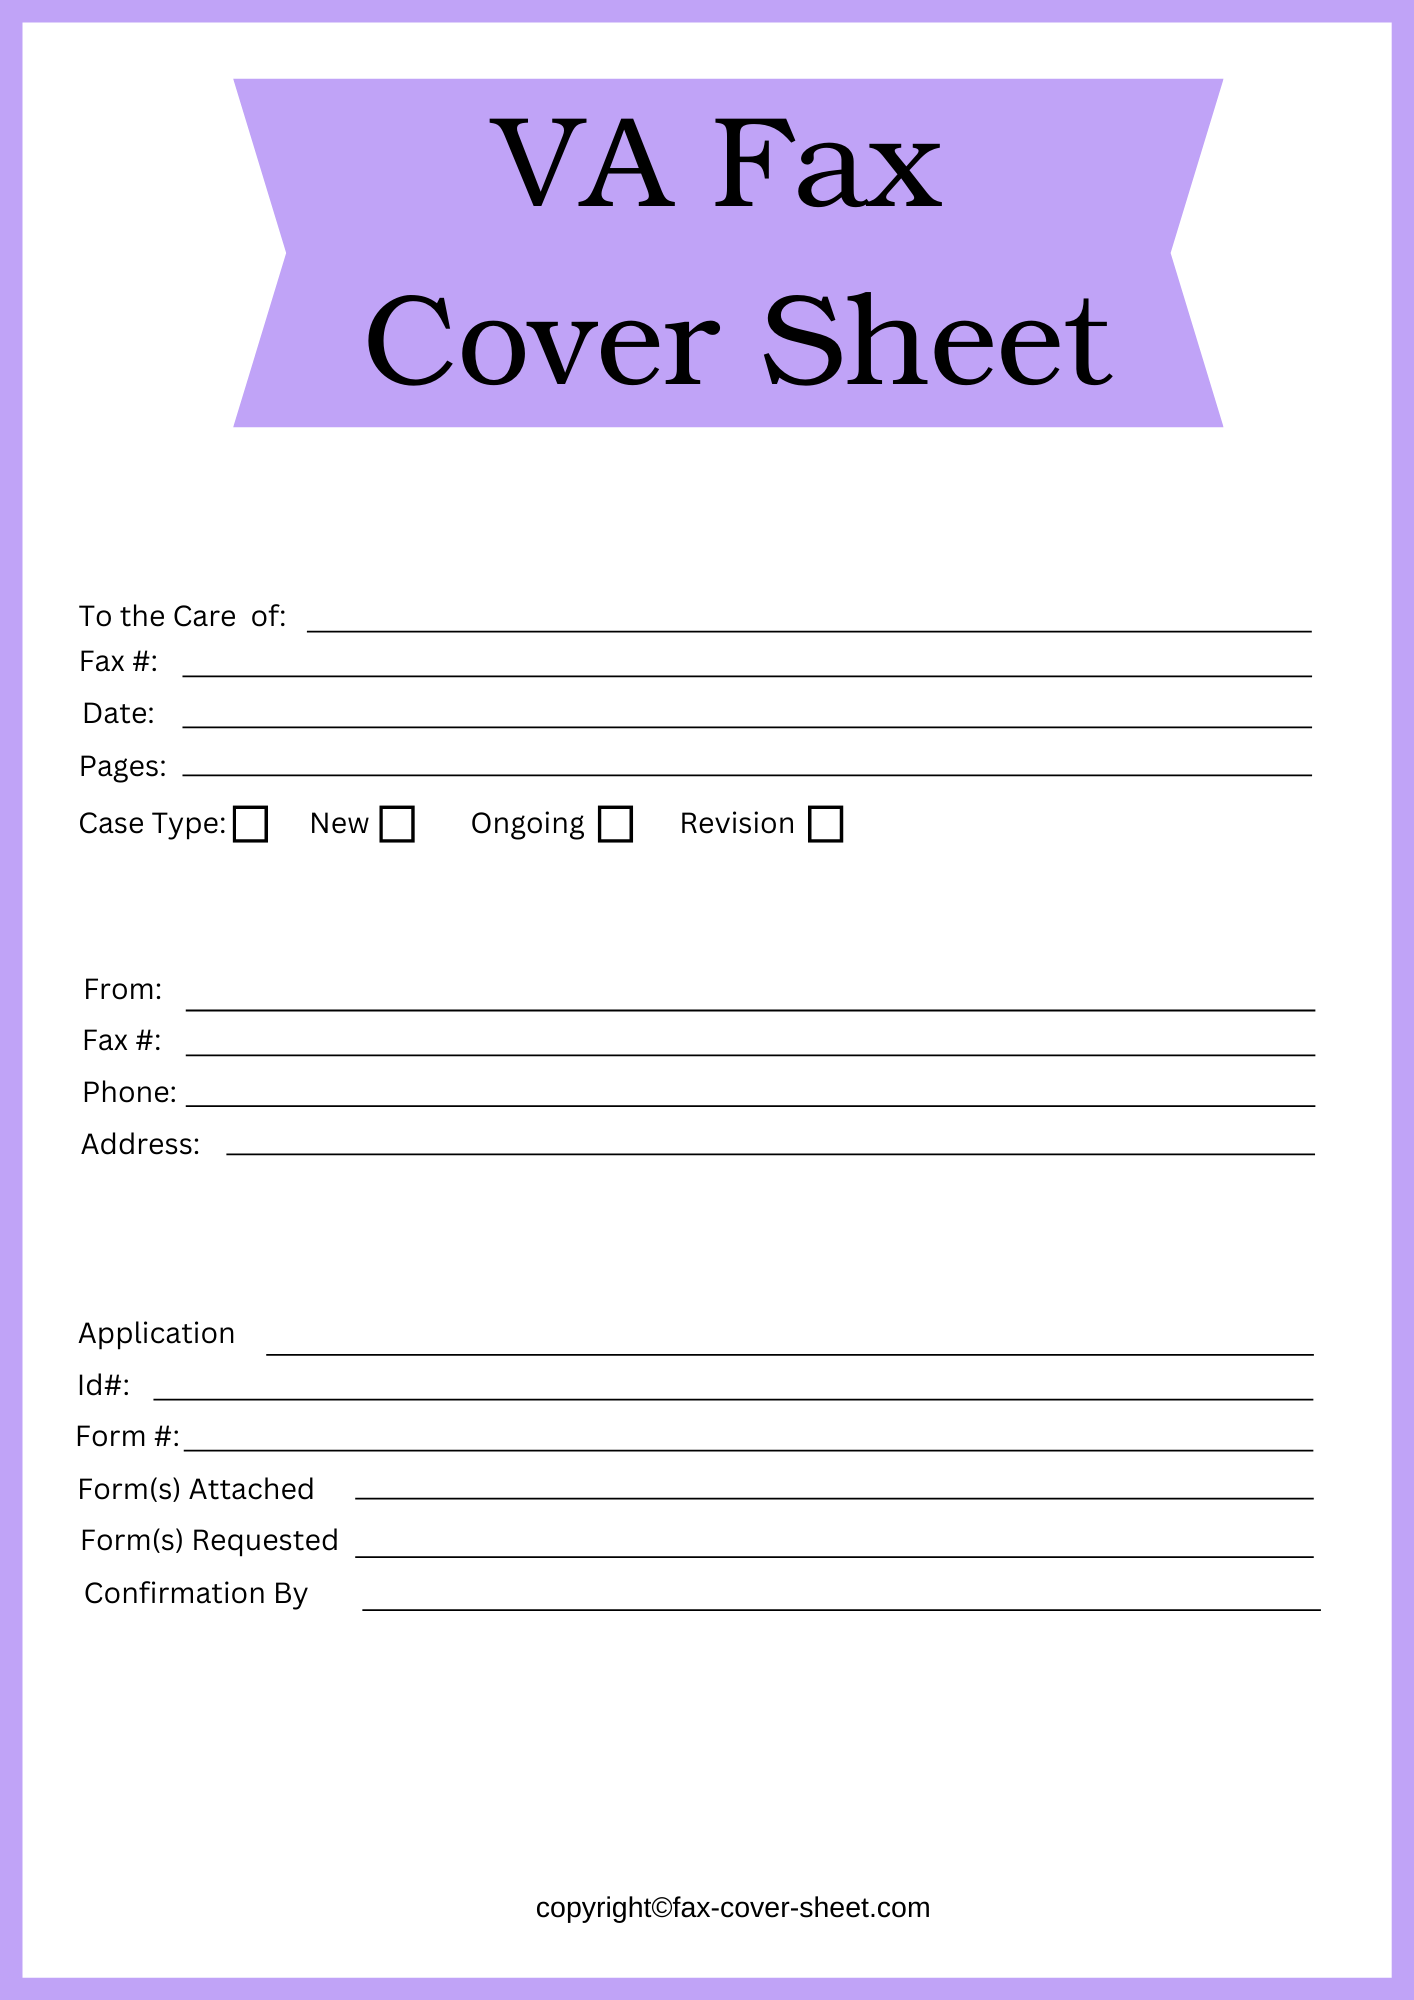 VA Fax Cover Sheet